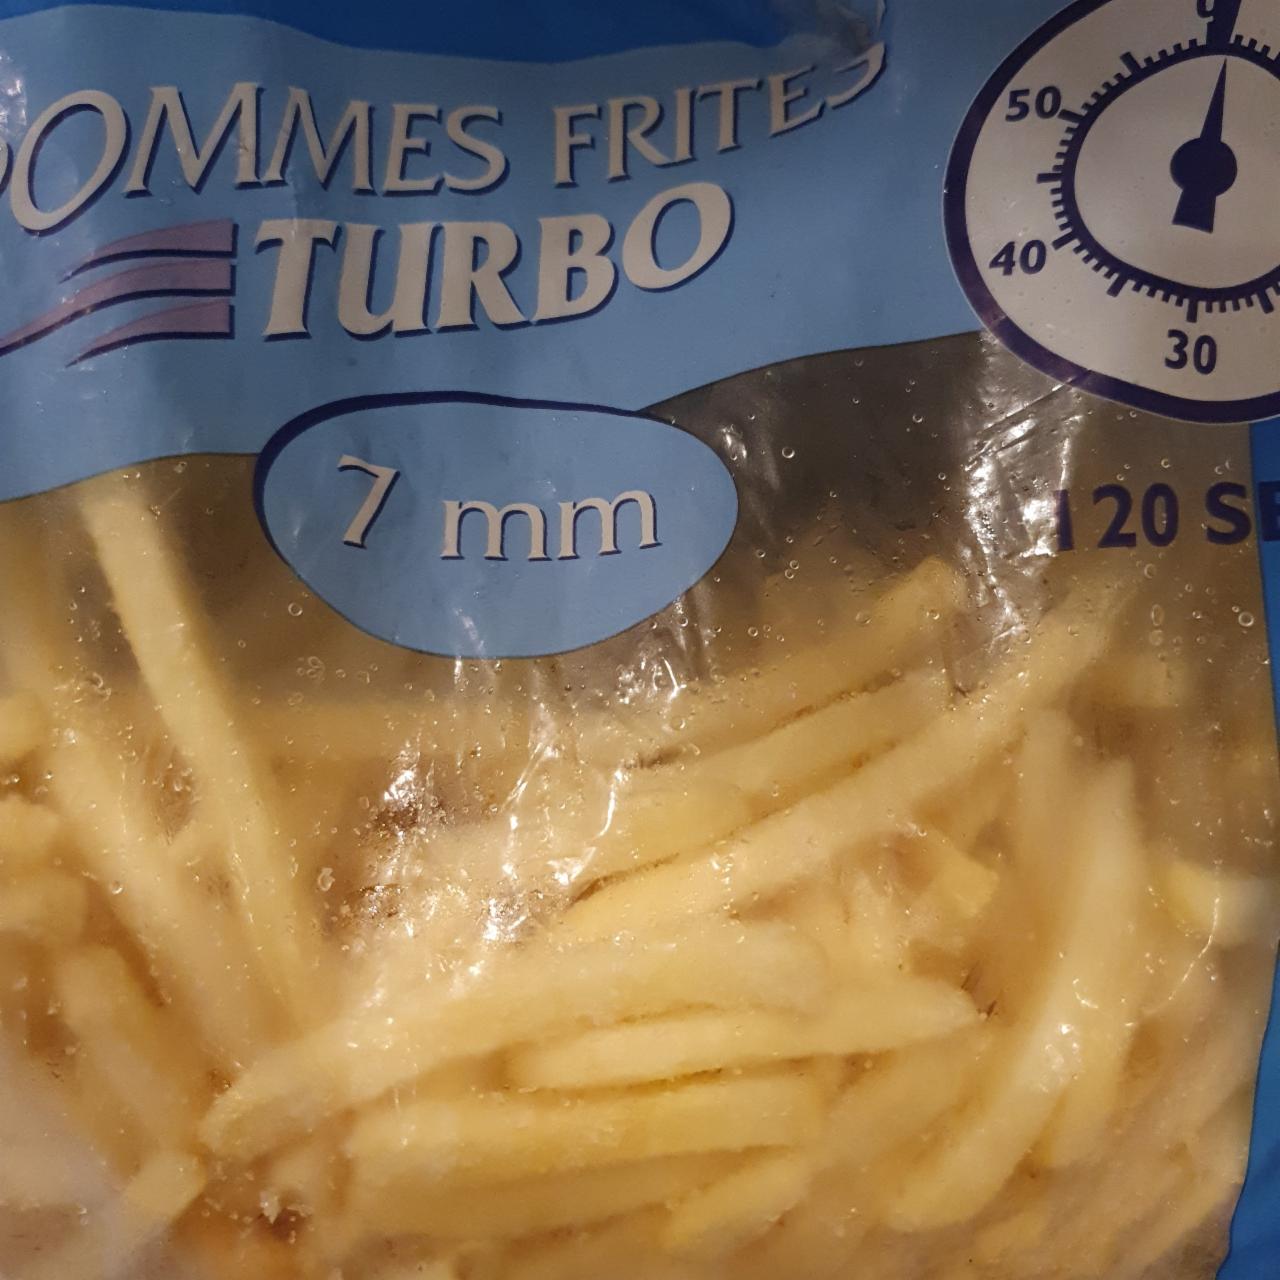 Fotografie - Pommes frites turbo 7 mm Aviko